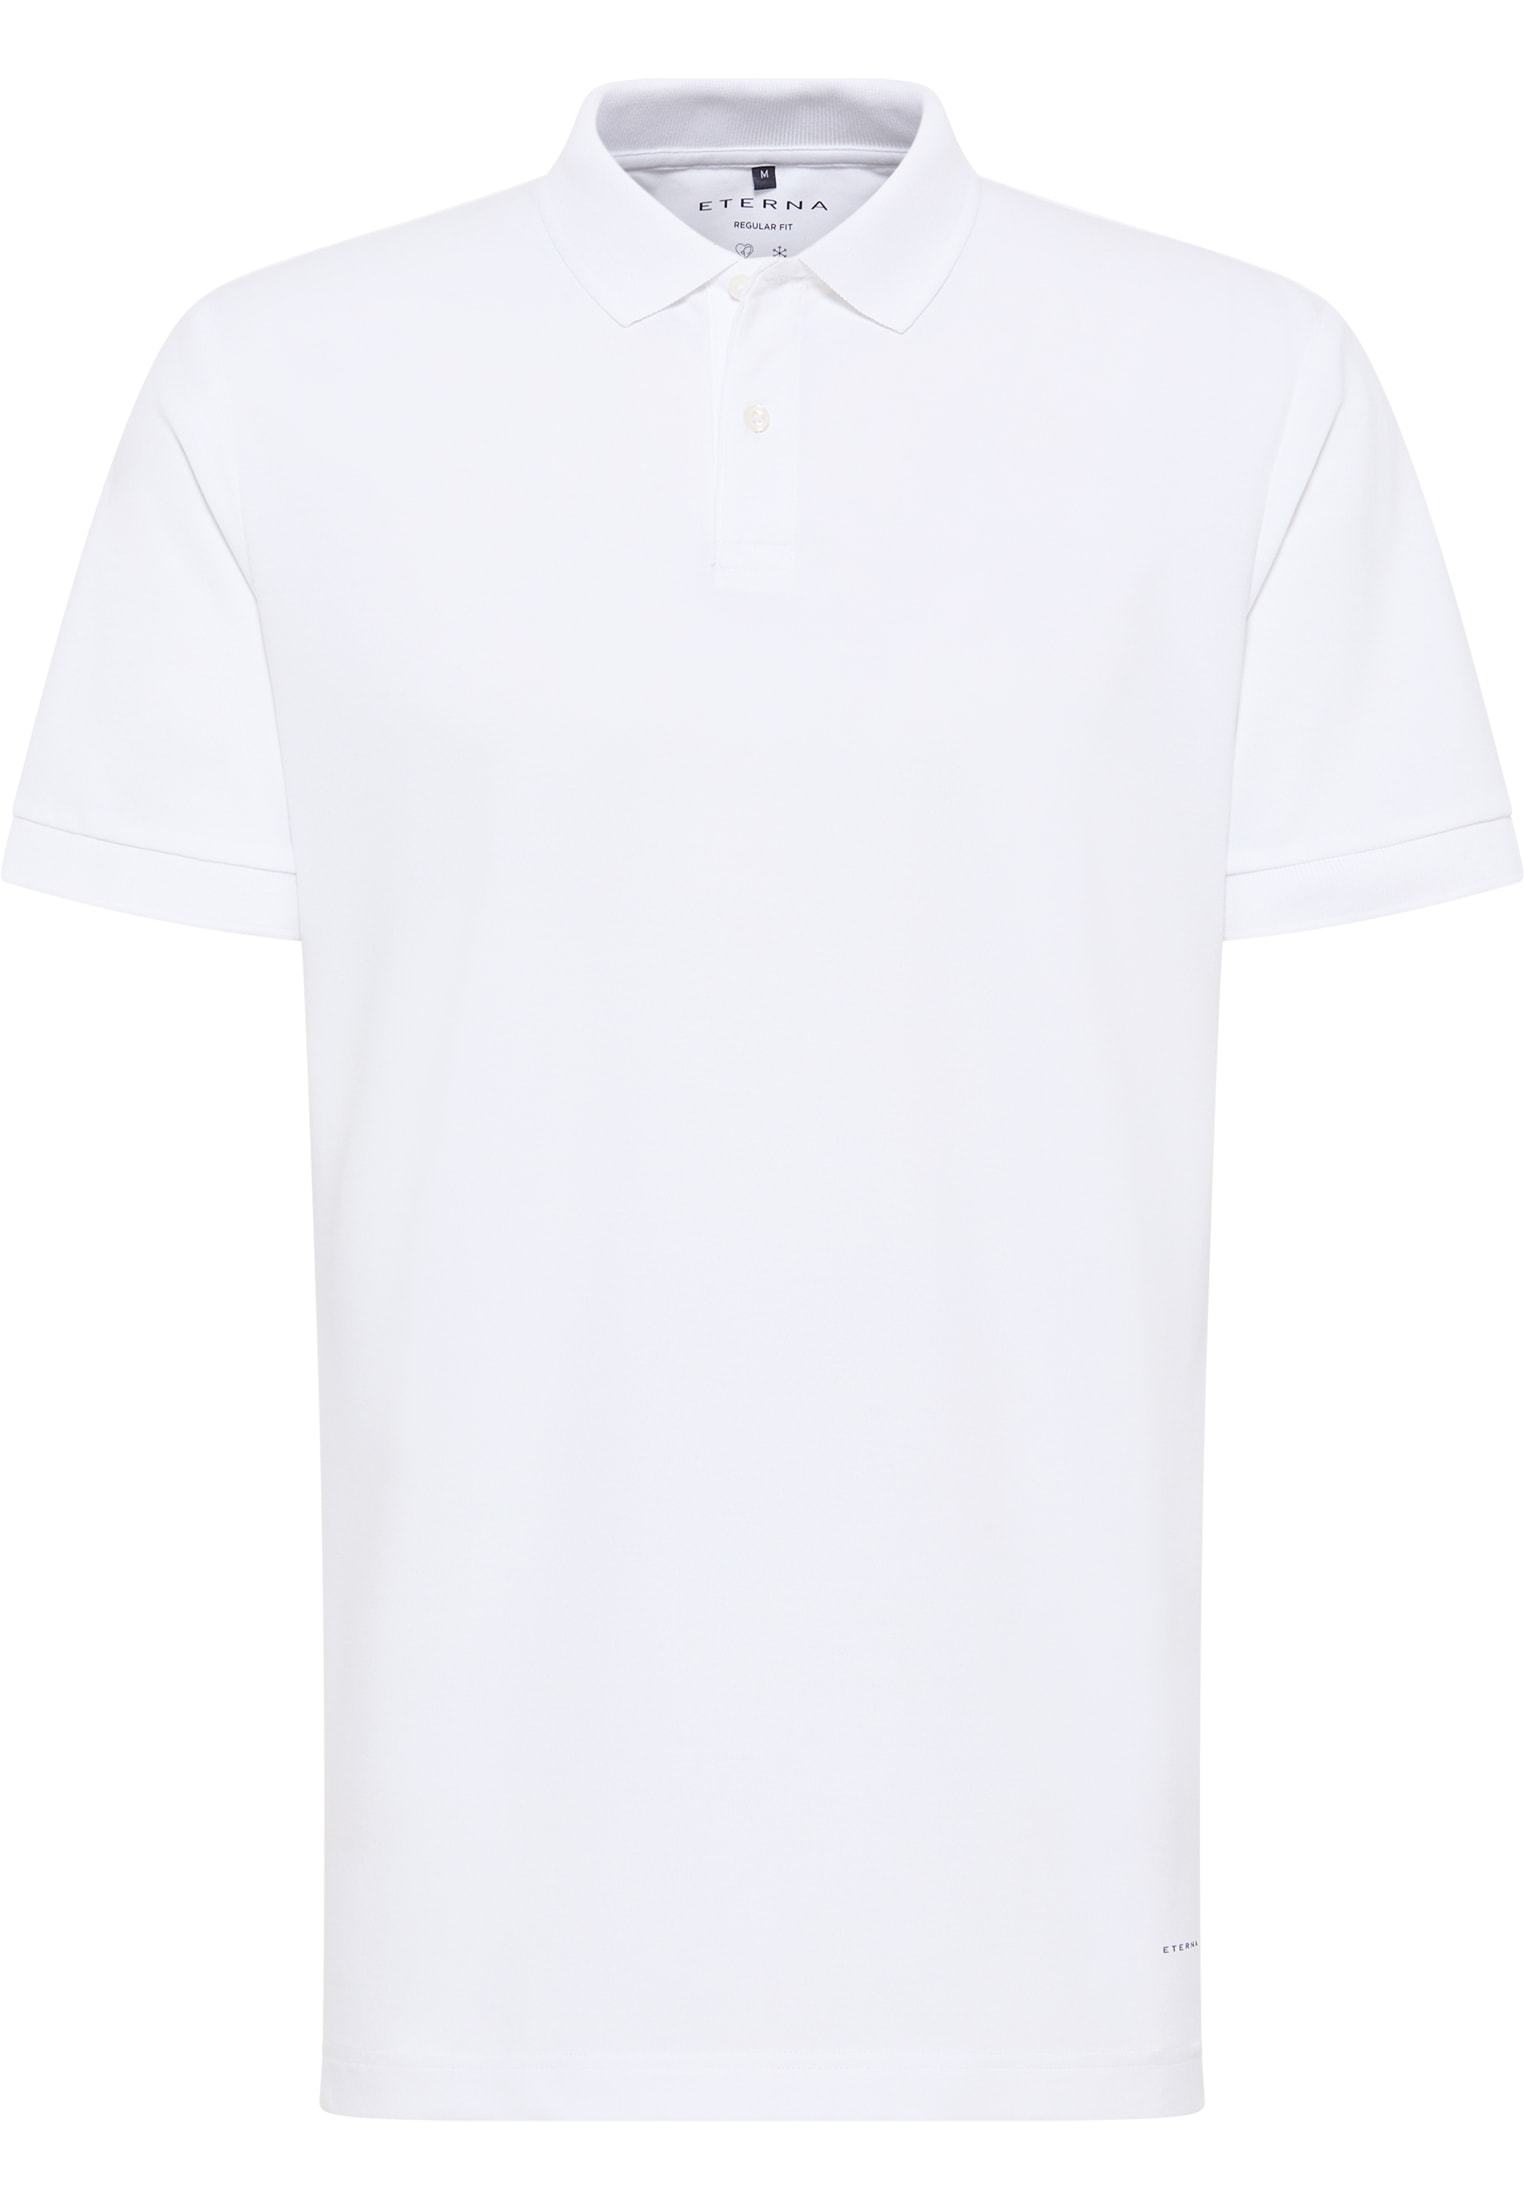 MODERN FIT Poloshirt in weiß unifarben | weiß | 42 | Kurzarm |  1SP00175-00-01-42-1/2